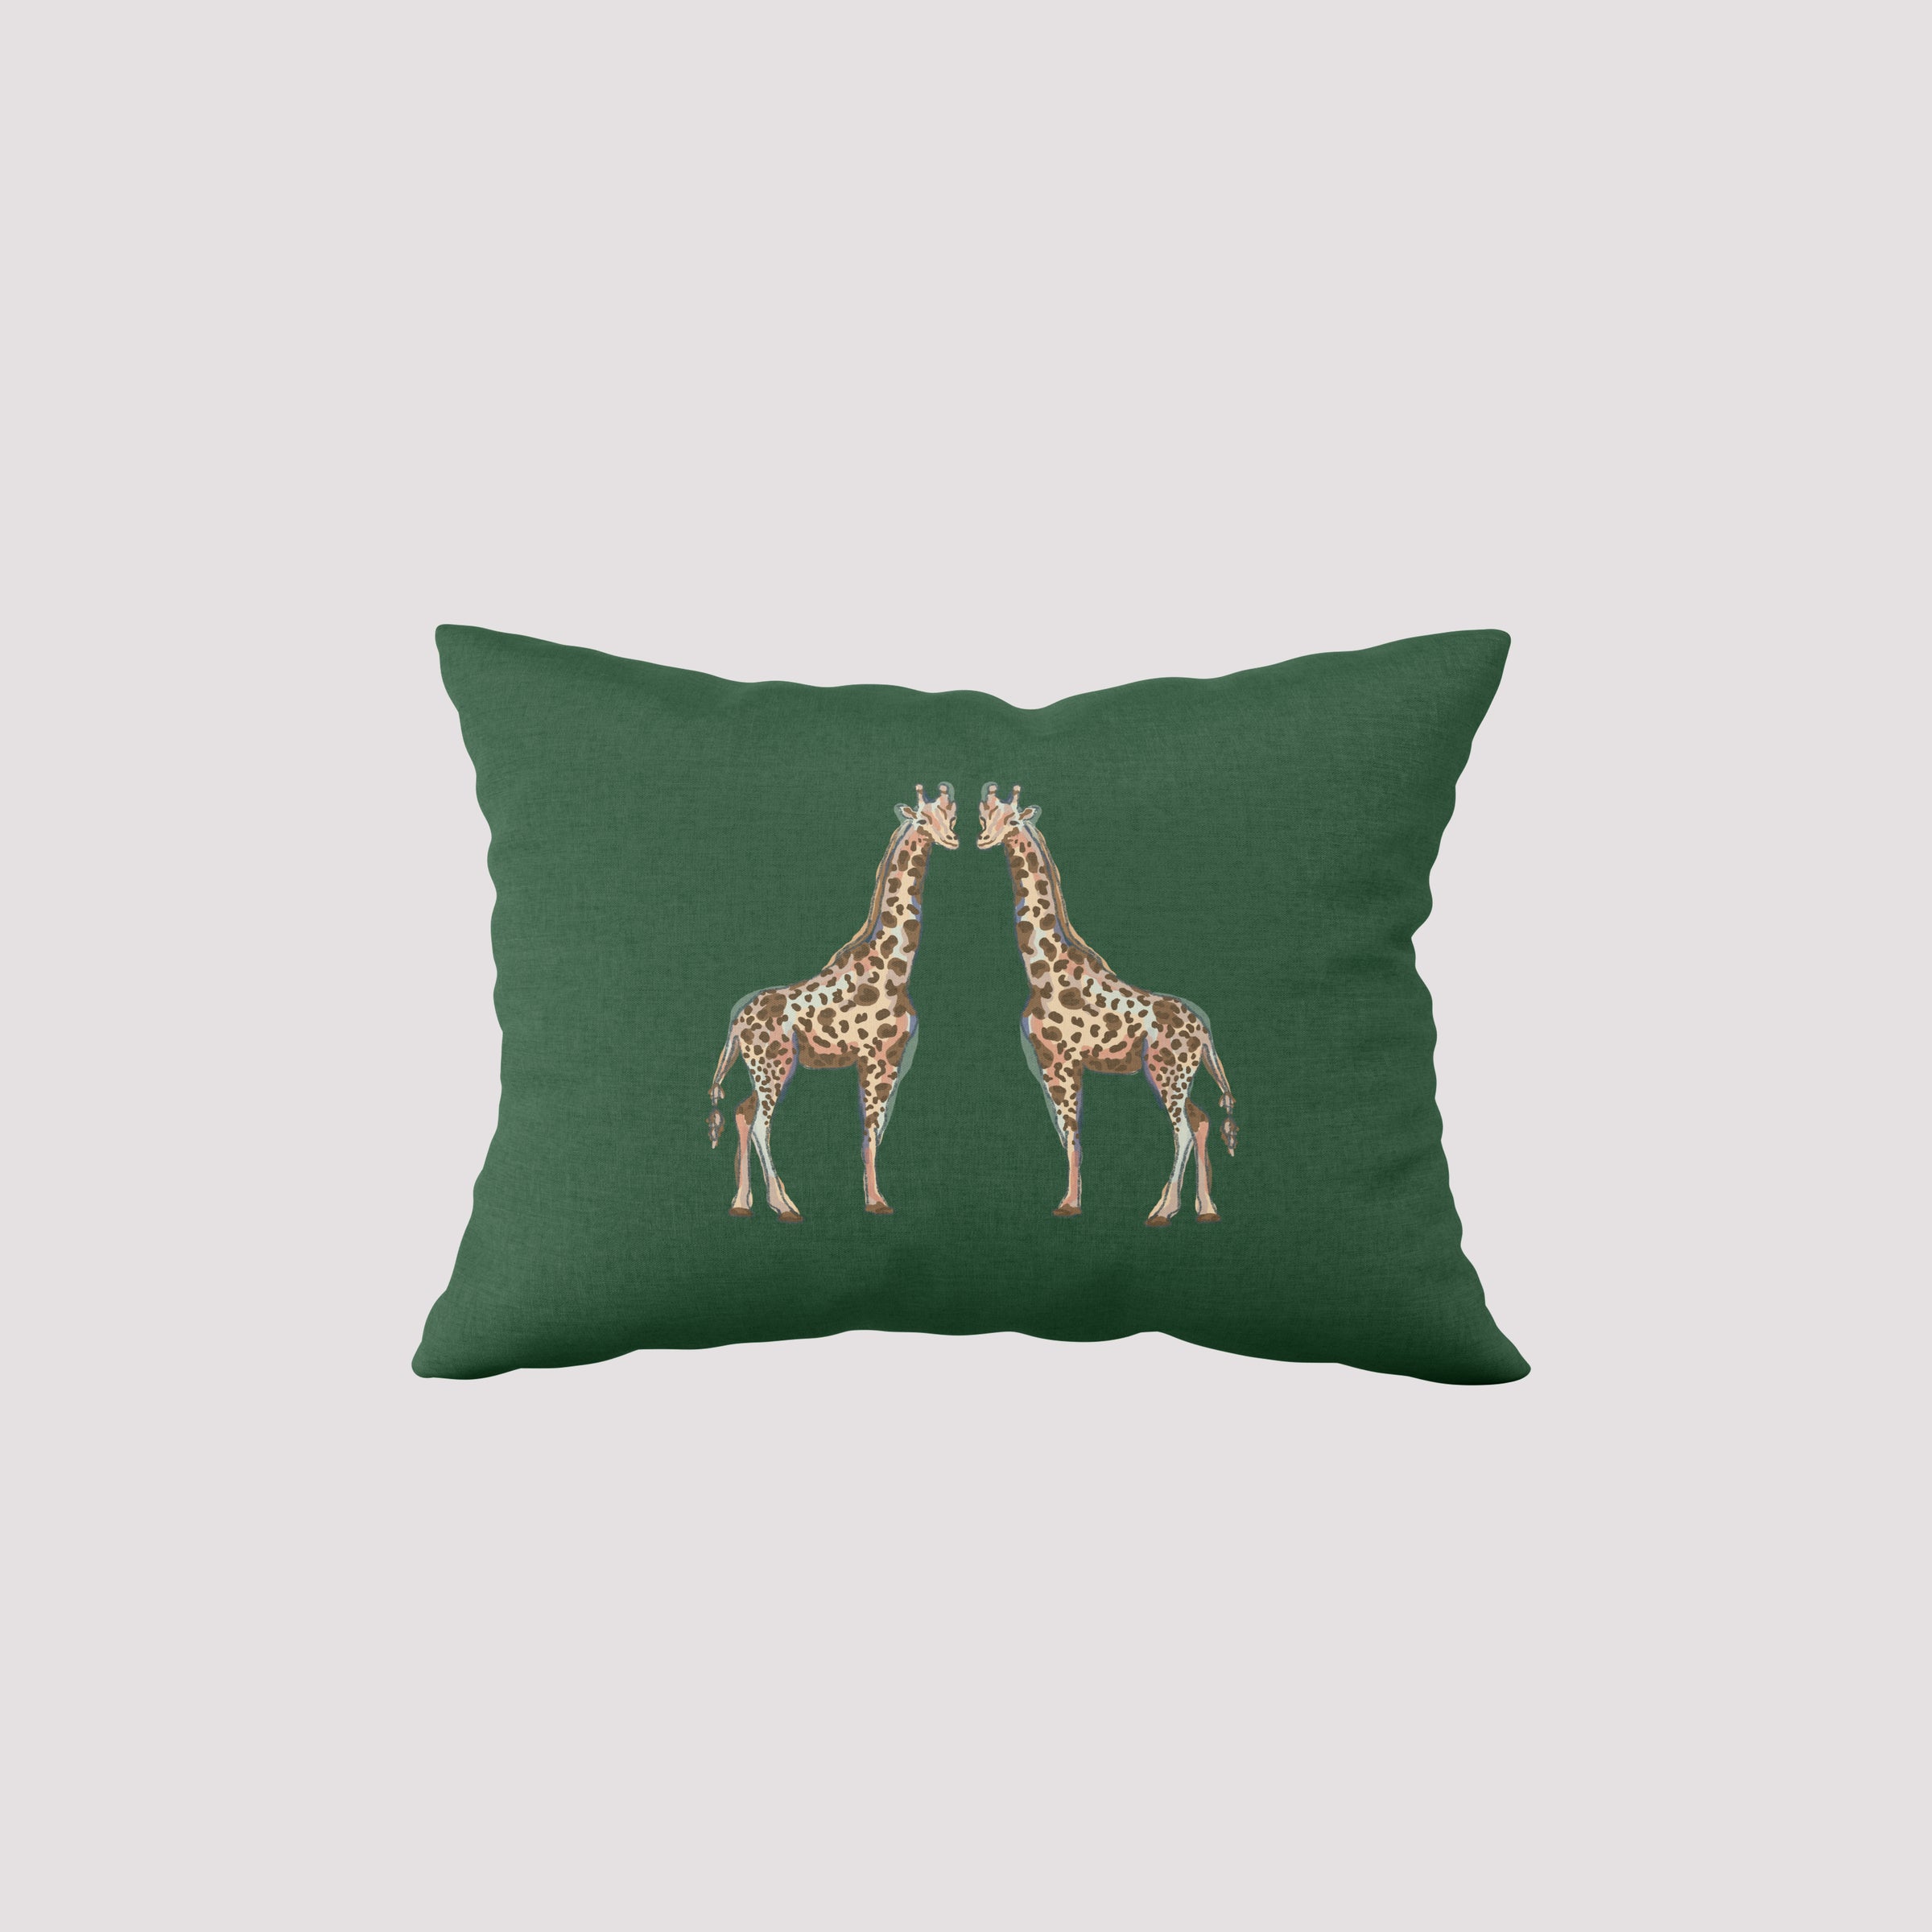 Giraffes on Grass Lumbar Pillow – Sewing Down South